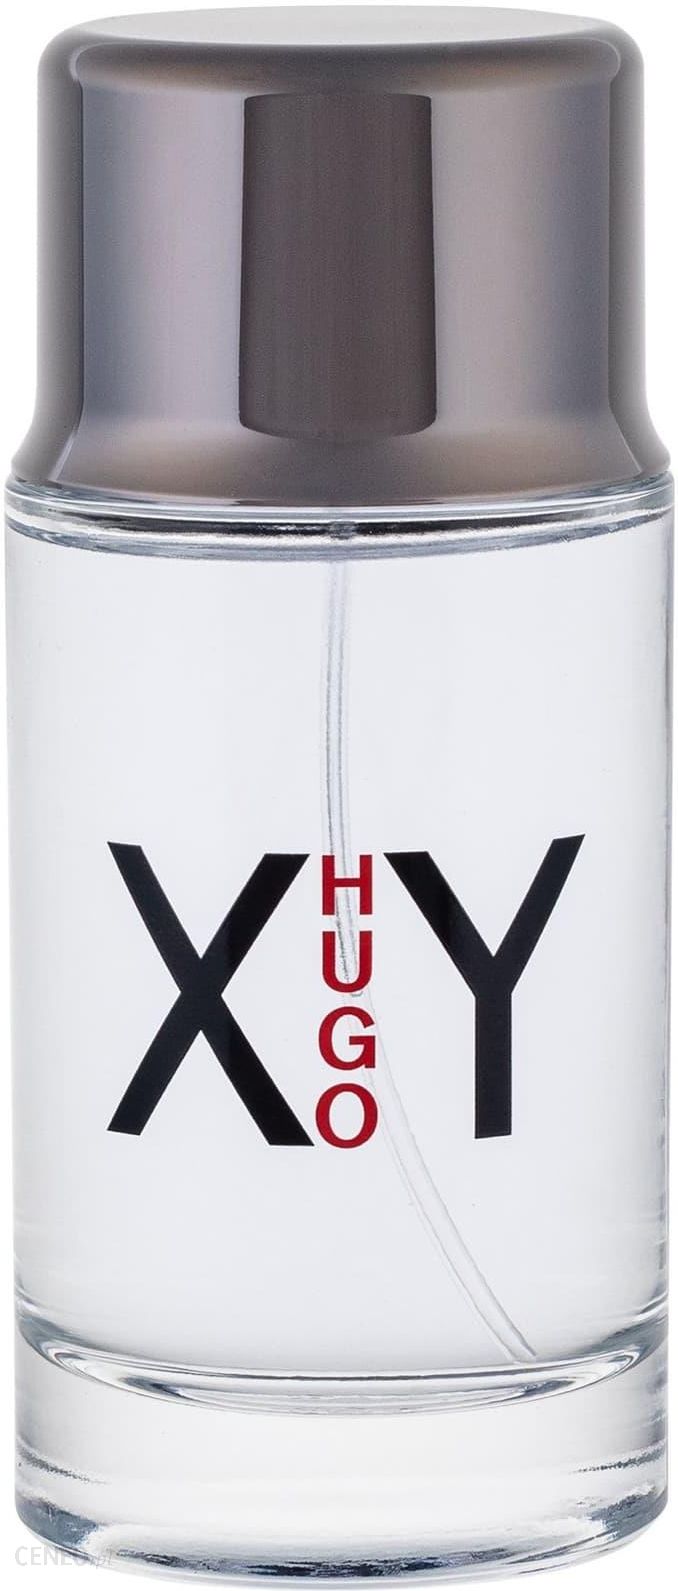 hugo boss xy 100ml price